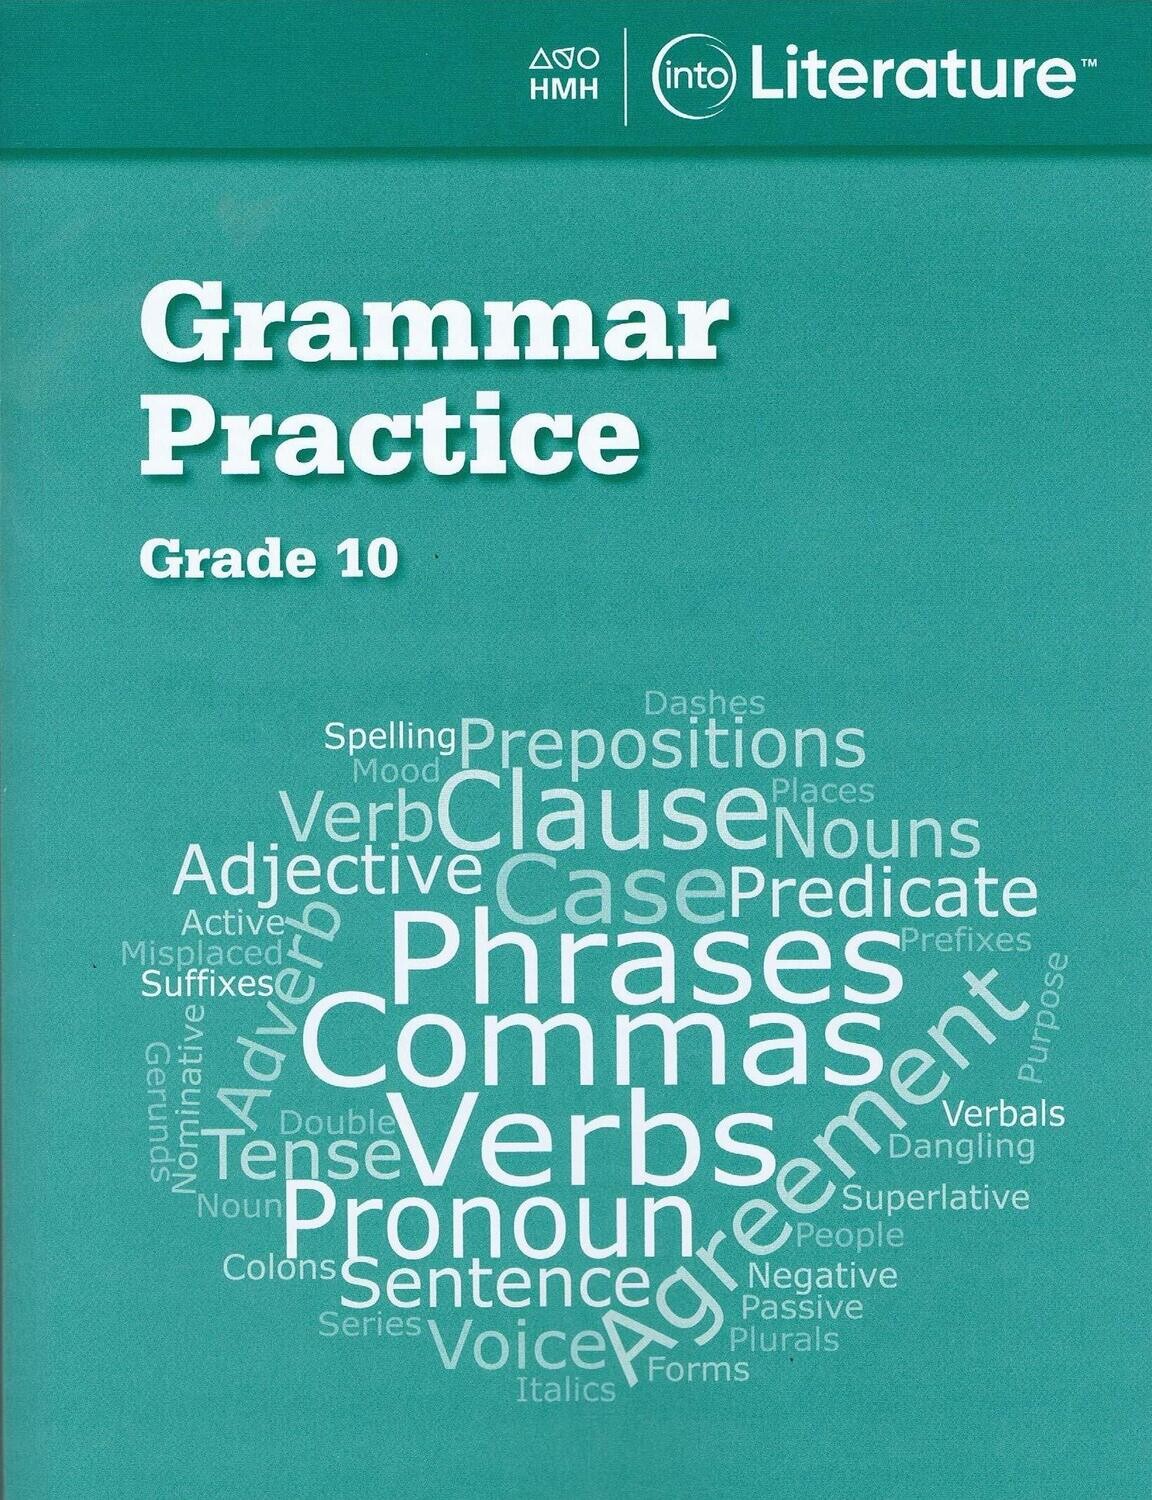 TENTH GRADE - INTO LITERATURE GRAMMAR PRACTICE GRADE 10 - HMH - 2020 - ISBN 9780358264170